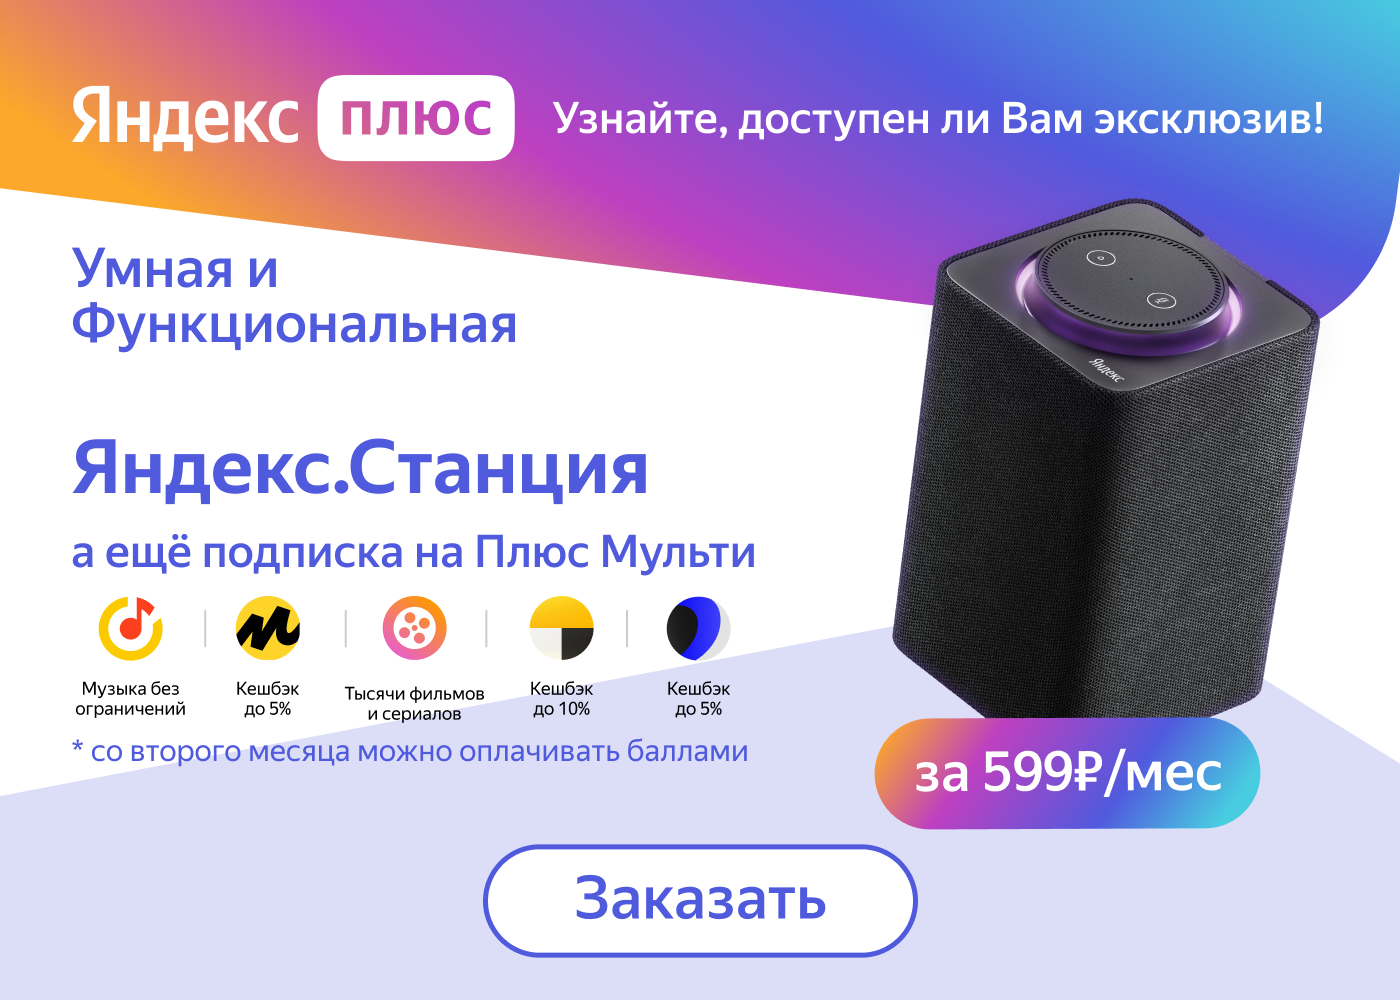 Яндекс подписка купить телеграмм фото 98